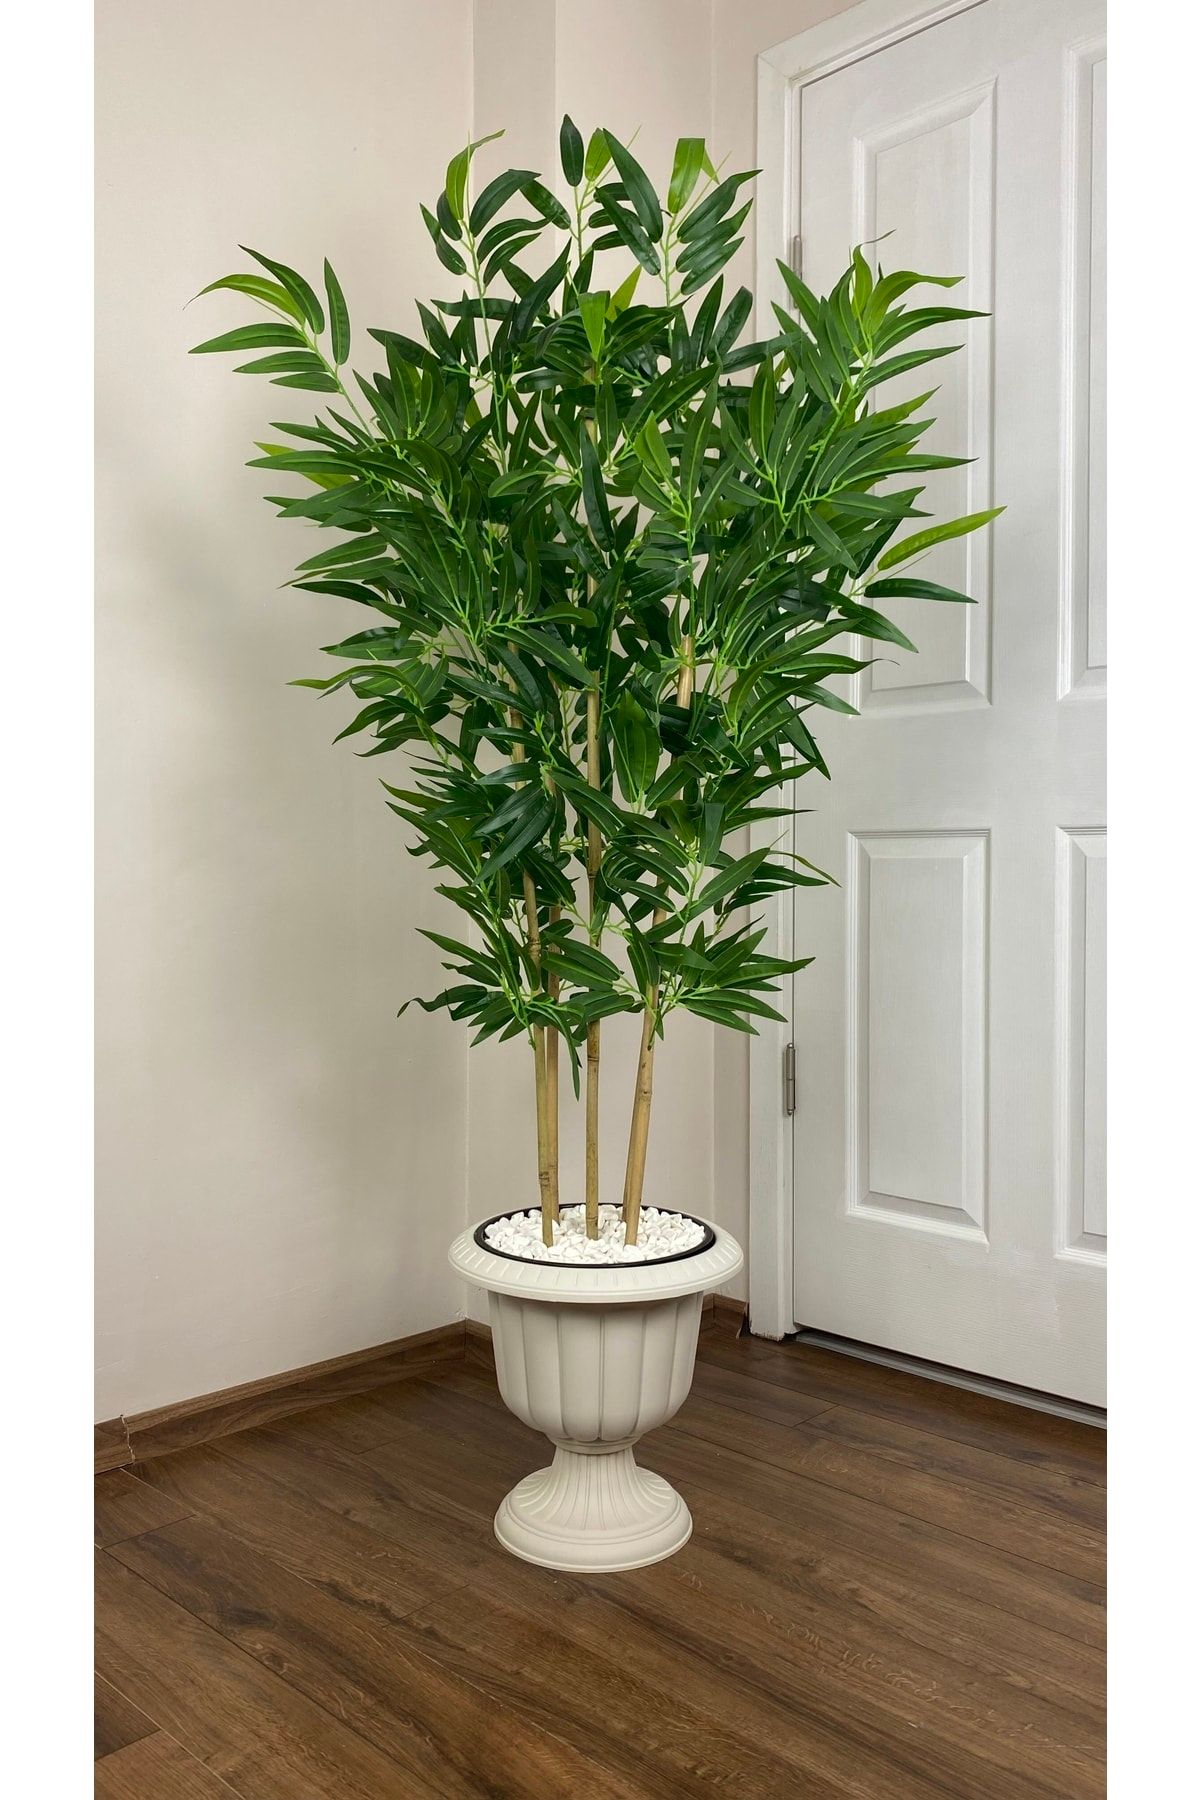 BİÇİÇEK Yapay Bambu Ağacı 170cm Büyük Yapraklı 5 Bambulu Kırık Beyaz Renk Nergis Saksıda Yapay Ağaç